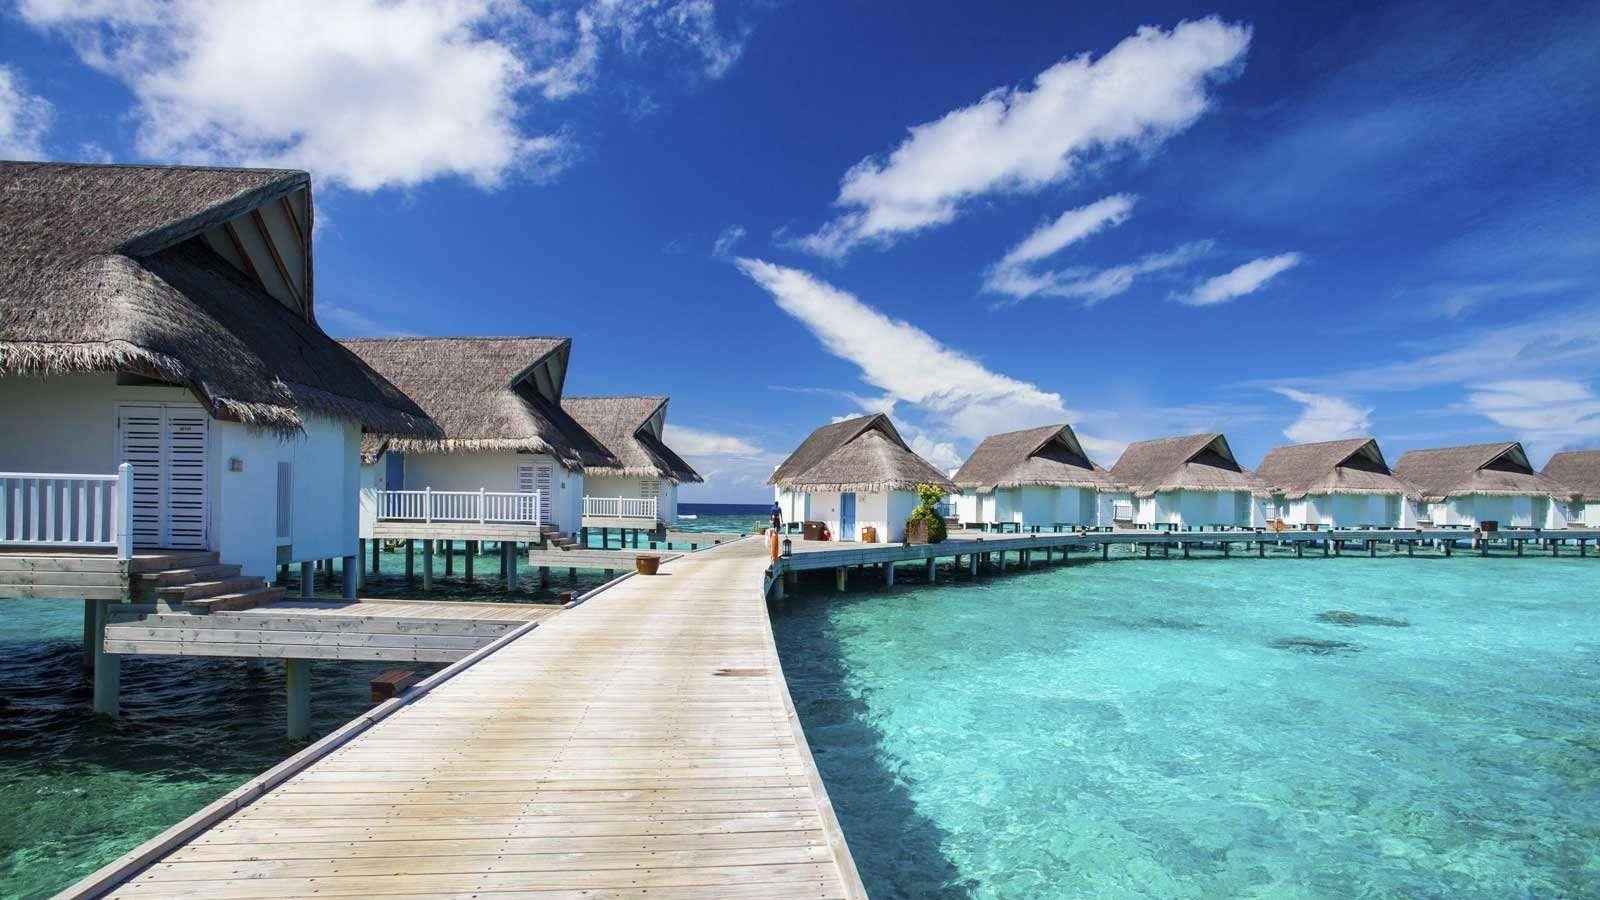 Costa Cruise Maldives to Mumbai Booking | Cruise Via Colombo, Goa